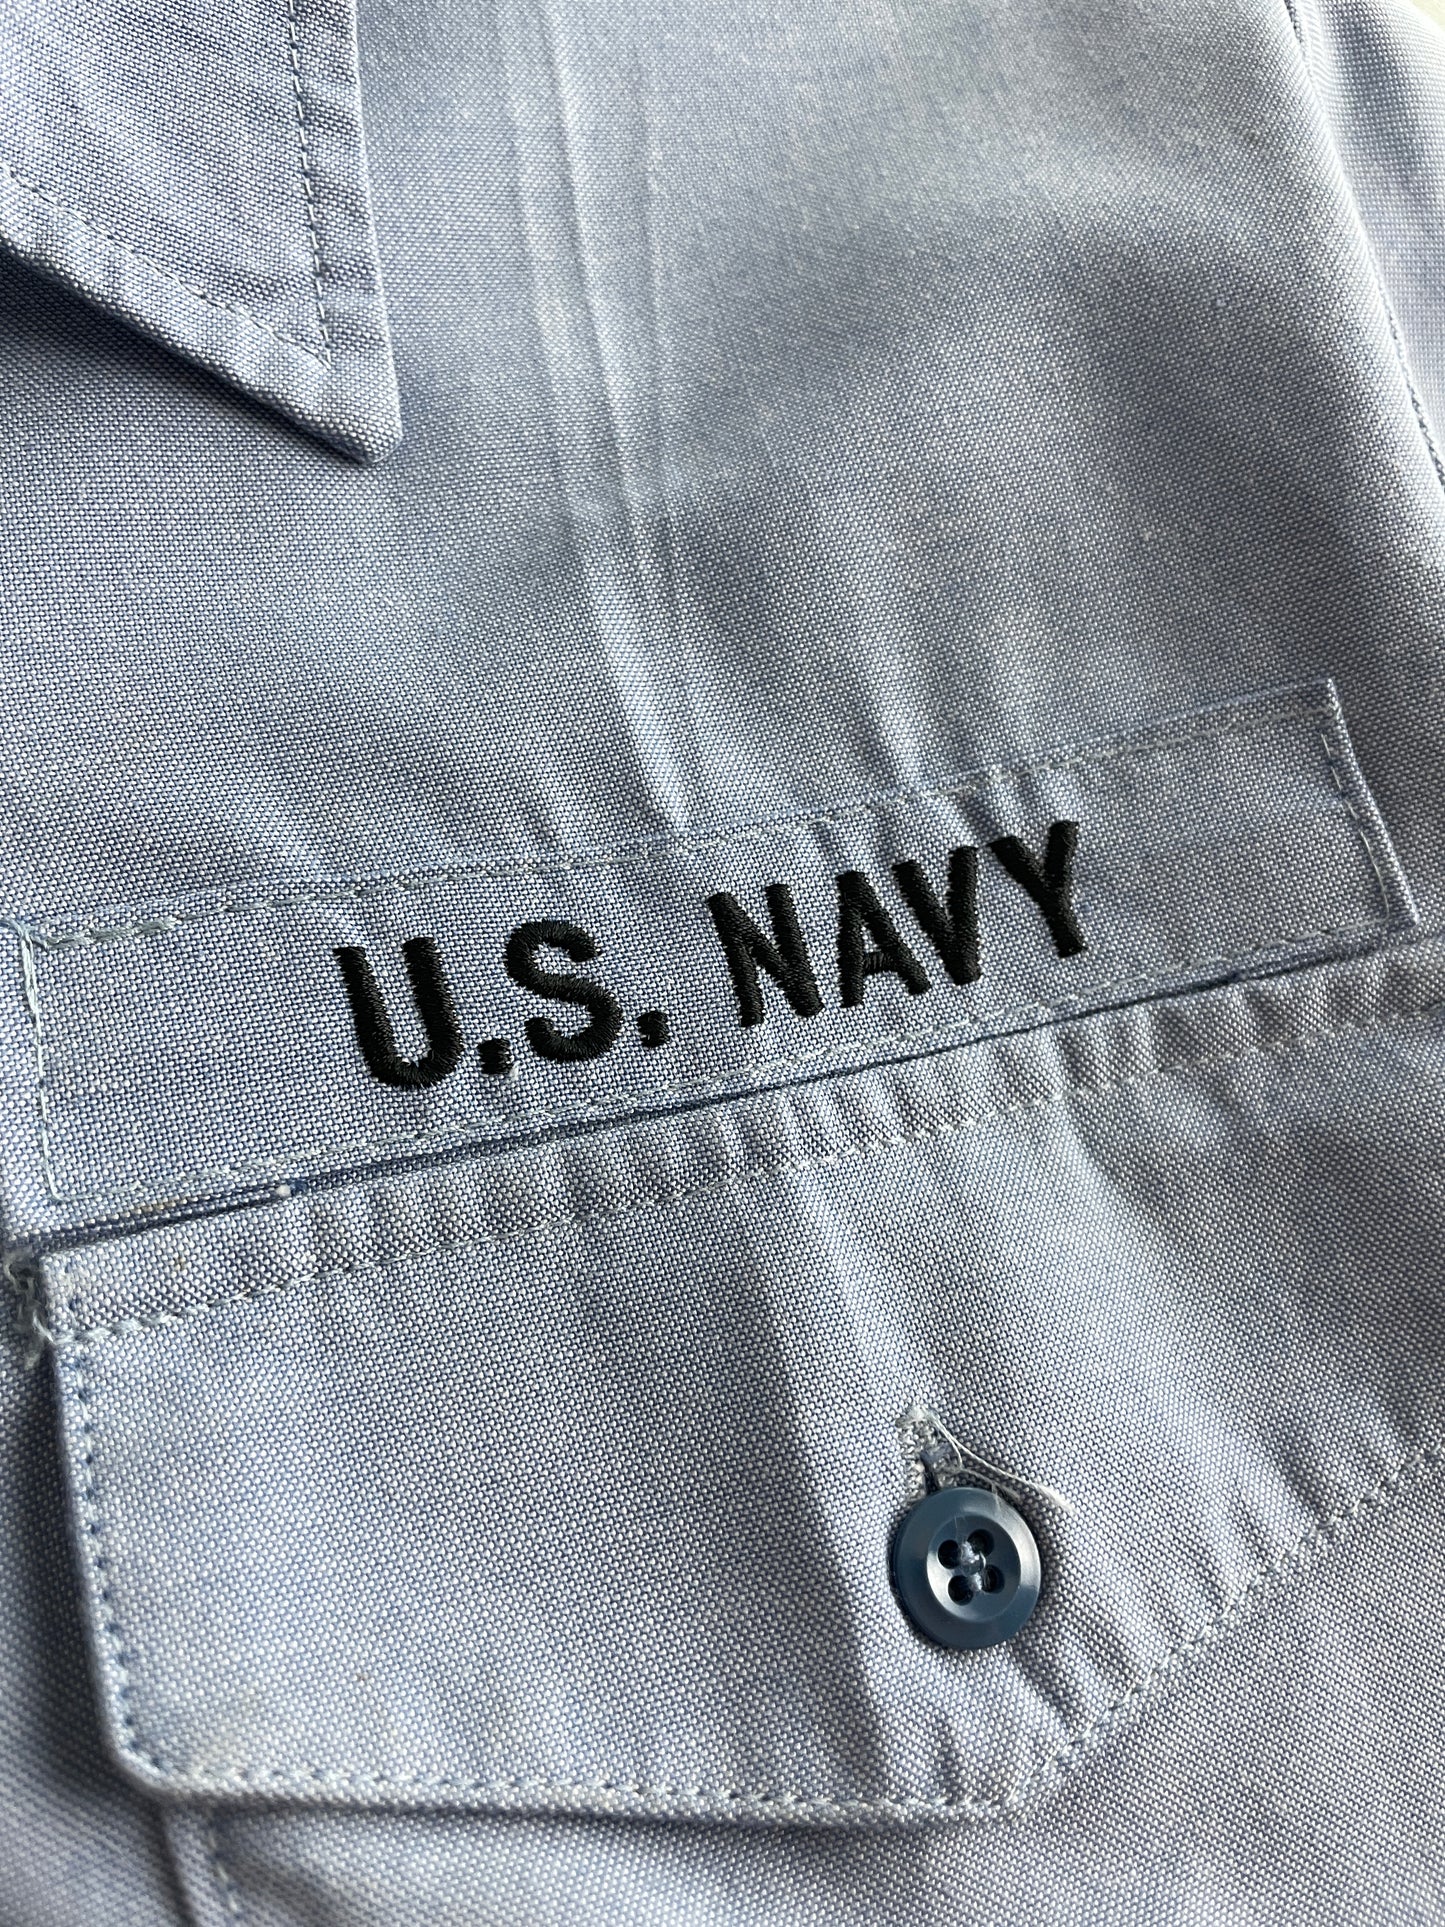 U.S. Navy Sea Farer Shirt [L]